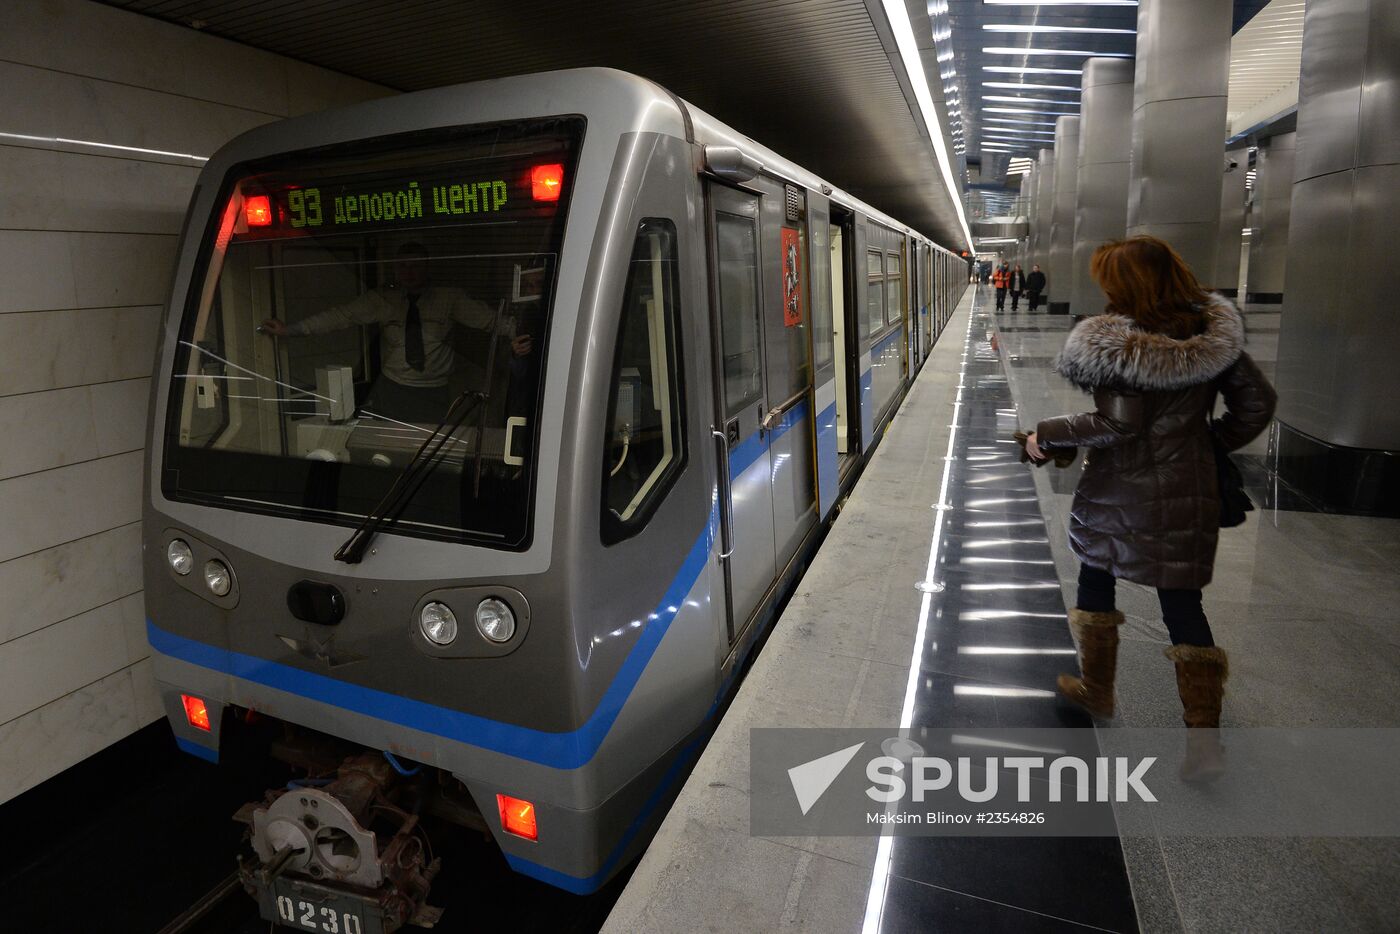 Delovoi Tsentr metro station opens to passengers